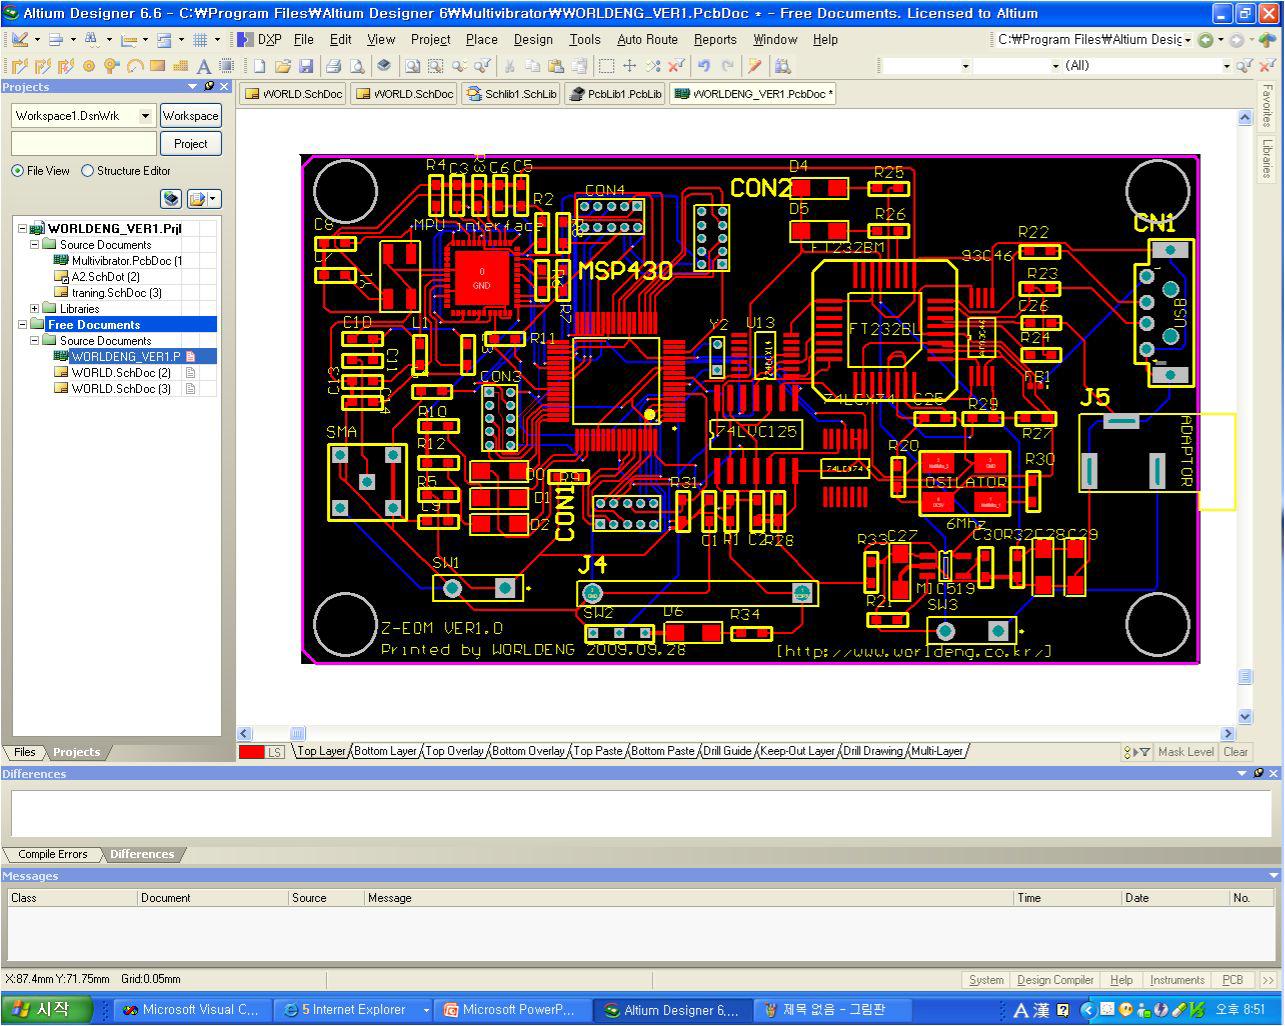 PCB Design_ver1.0(with Copper)